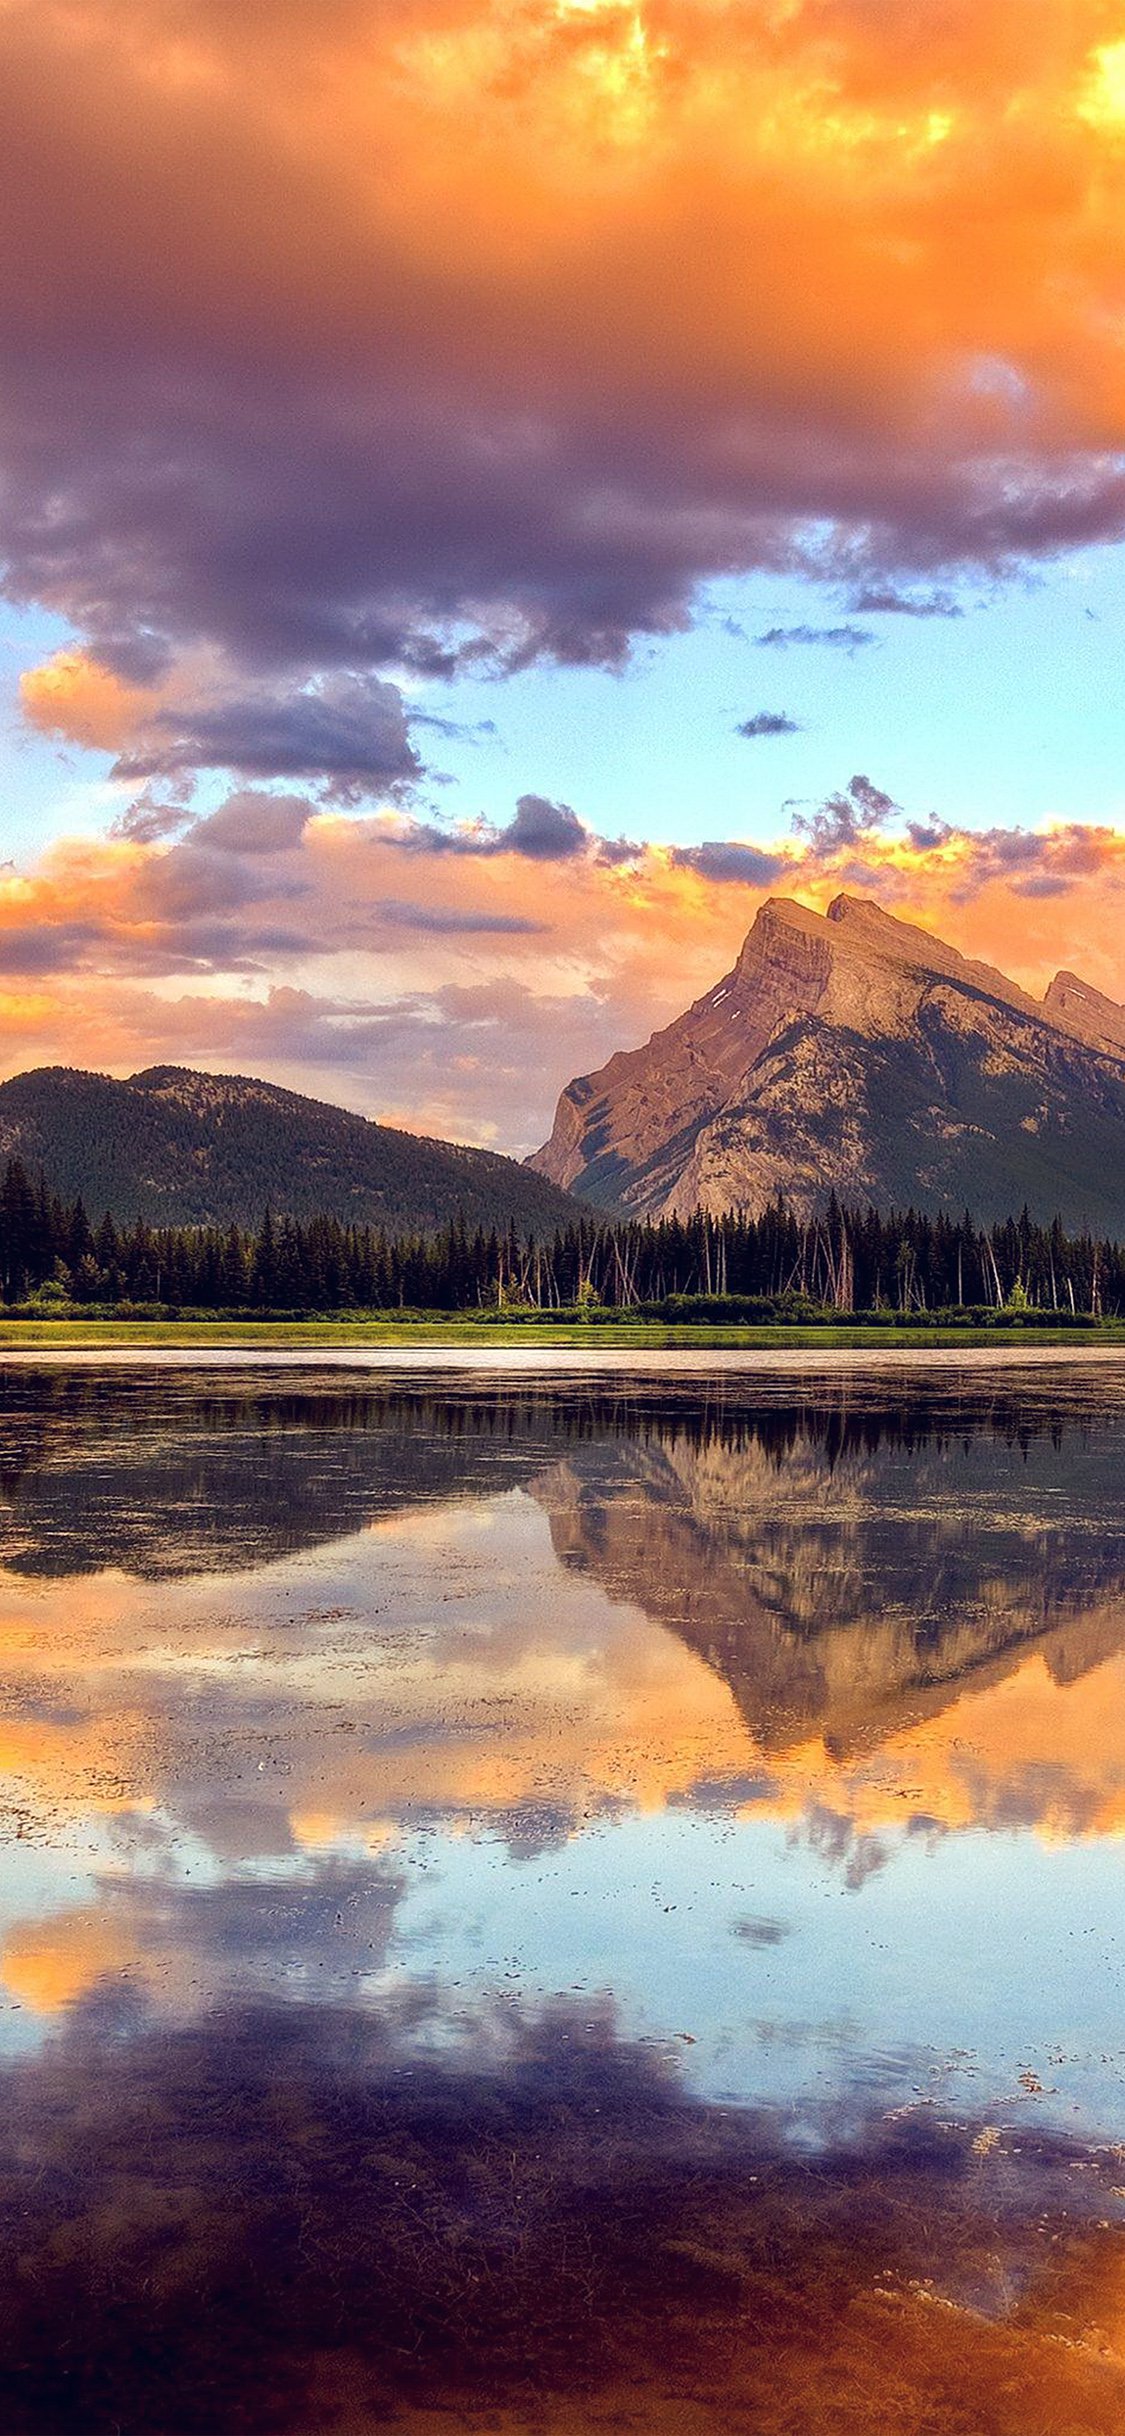 Mountain lake sunset iPhone wallpaper 